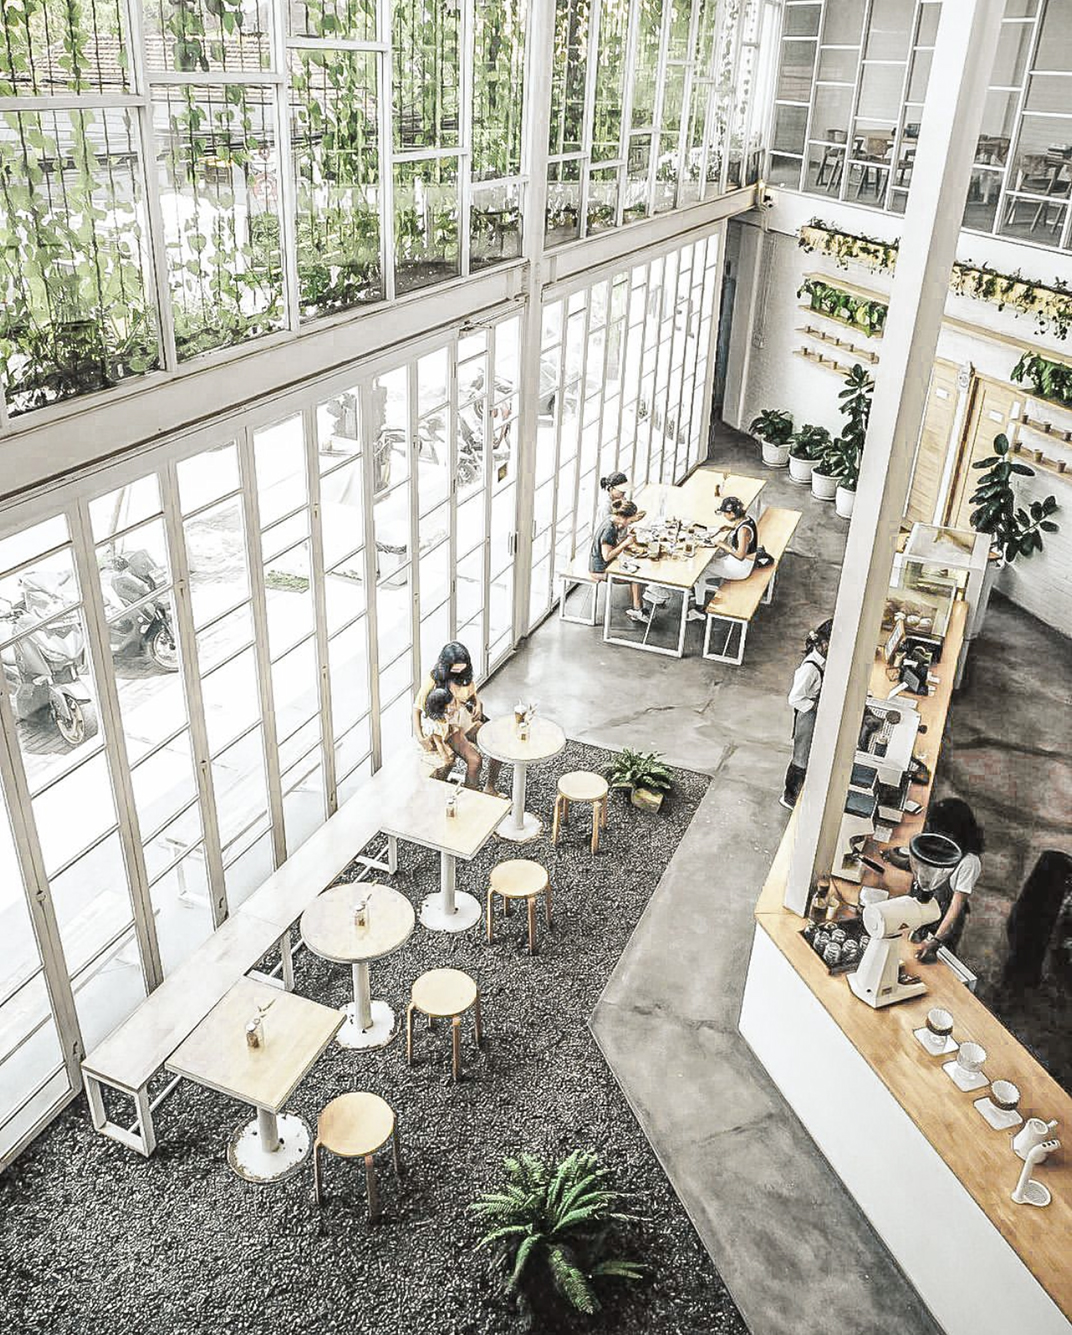 花园概念咖啡馆Cafe Meil Bali 巴厘岛 深圳 上海 北京 广州 武汉 咖啡店 餐饮商业 logo设计 vi设计 空间设计